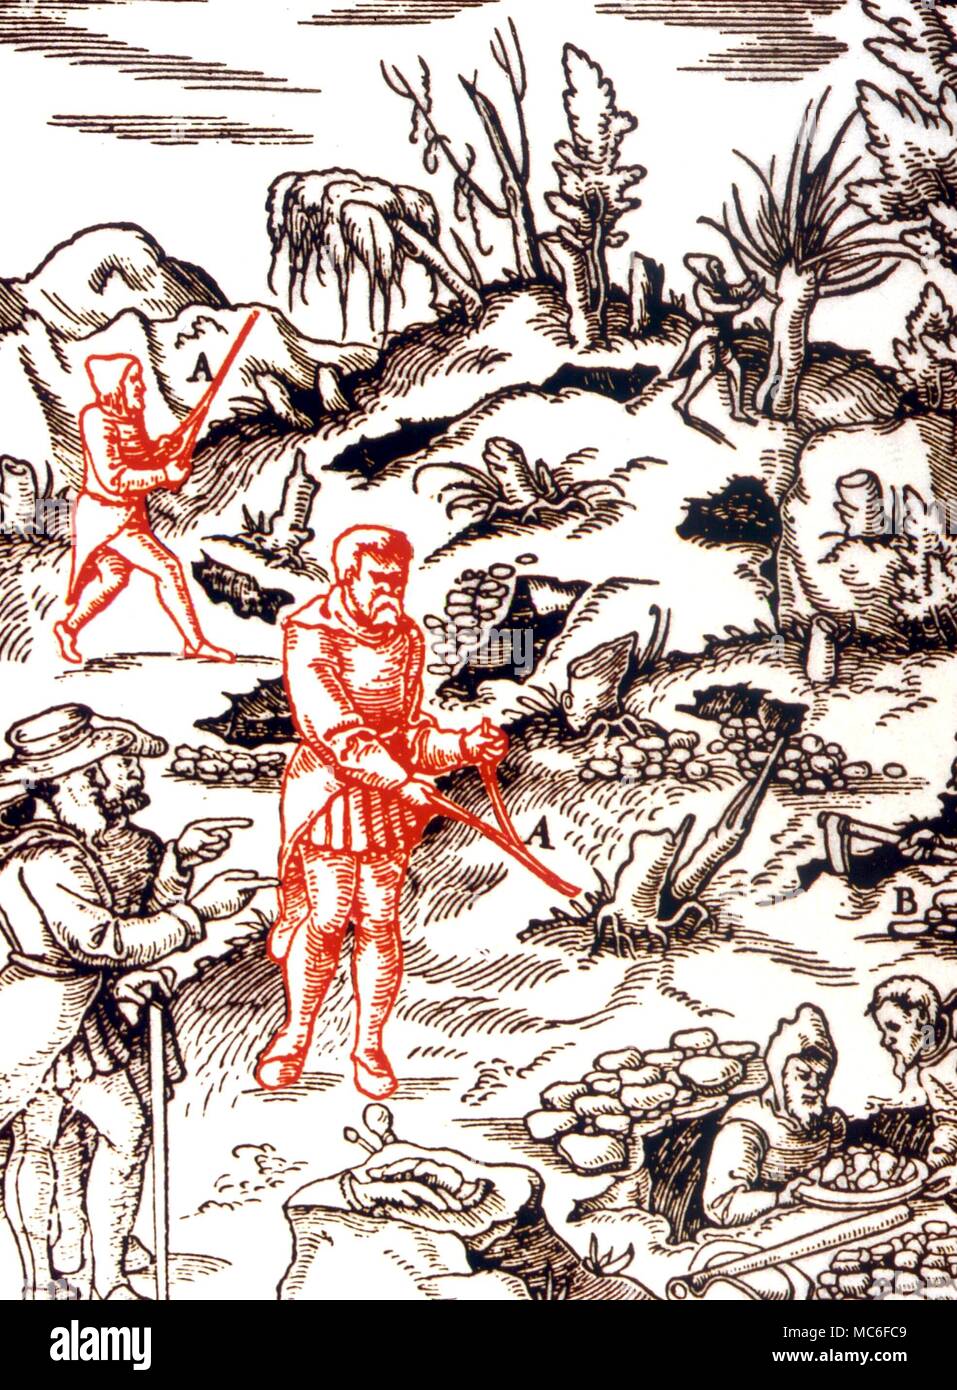 Radioestesia acqua divinazione (Rhabdomancy) illustrazione di acqua la divinazione o di esplorazione per il potenziale minerario per mezzo delle aste di divinazione. Da Georg Agricola "De re metallica, 1571 Foto Stock